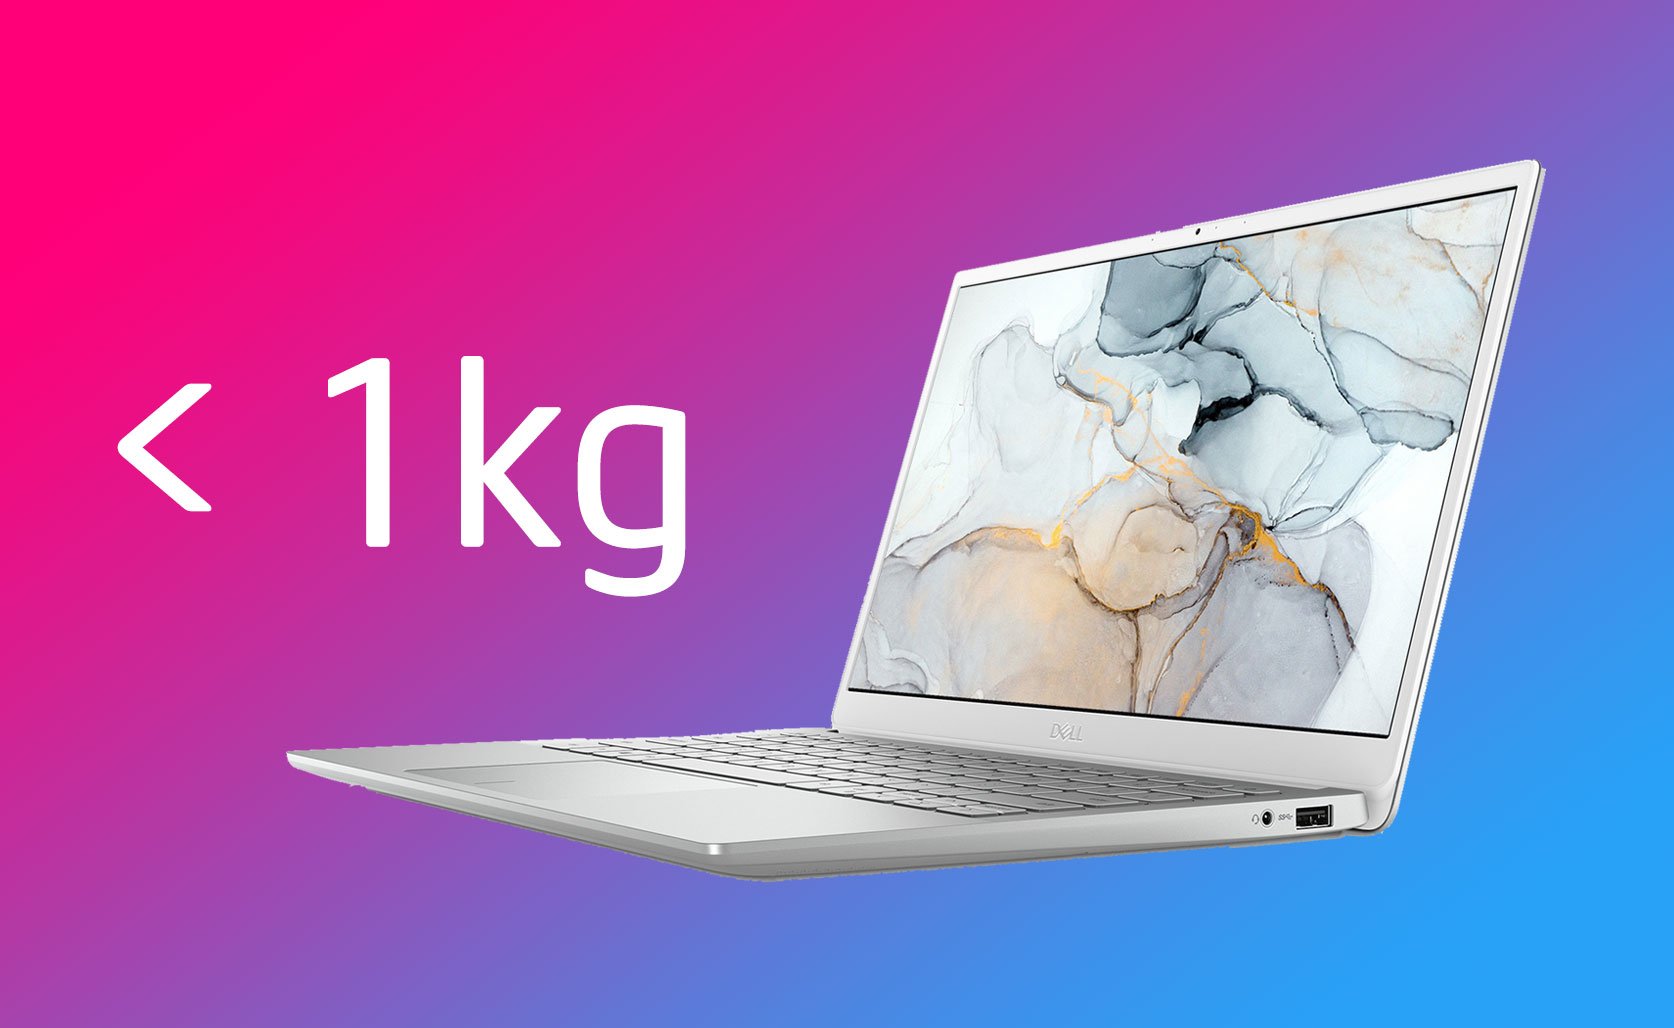 Dòng laptop Dell Inspiron 13 7391 mới nhẹ dưới 1kg, có CPU Core 10th, GPU rời, cảm biến vân tay